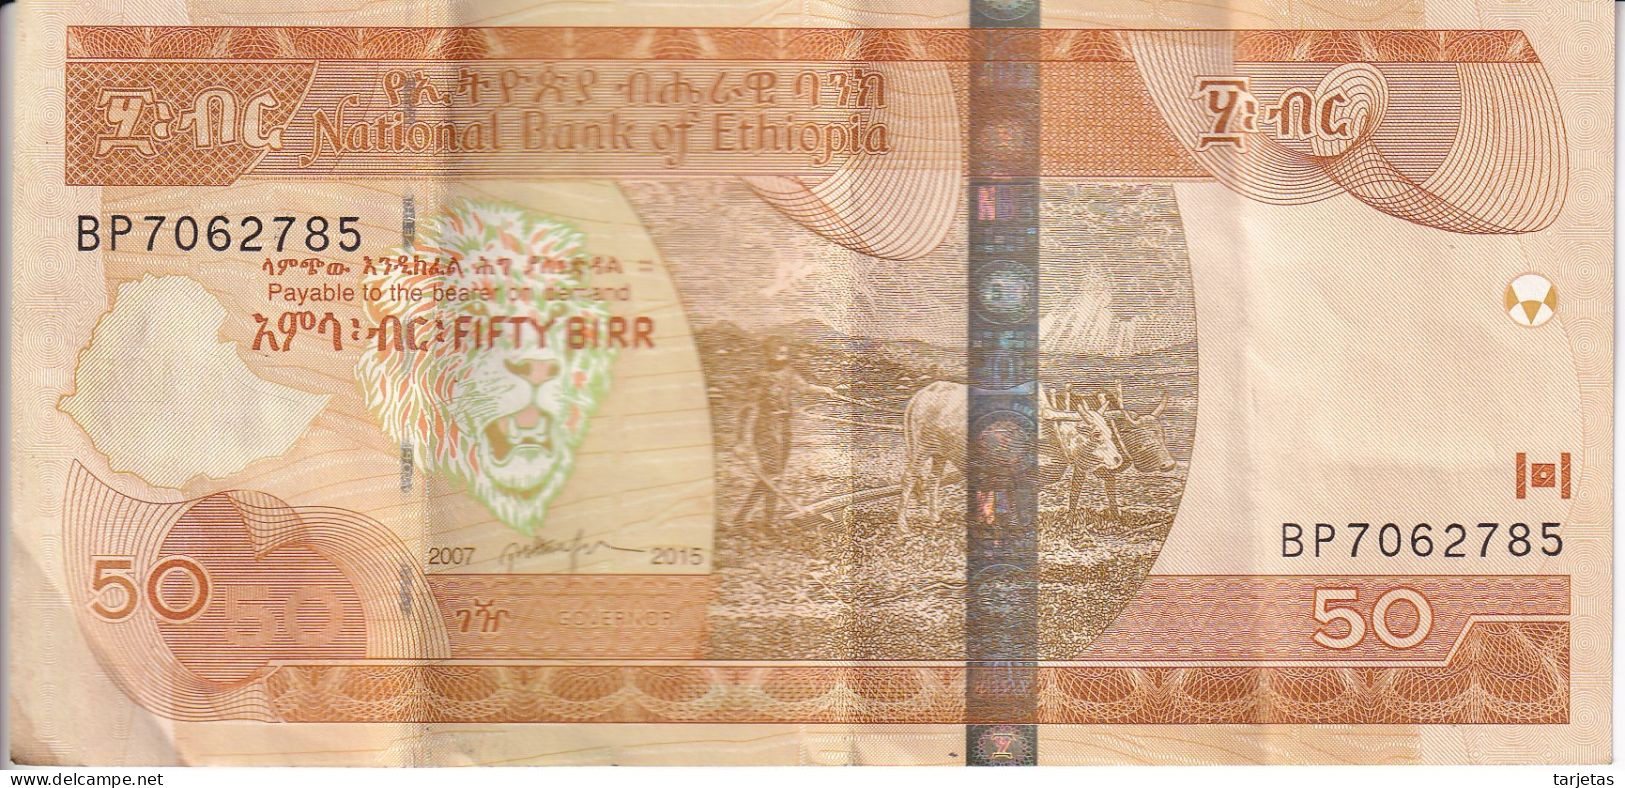 BILLETE DE ETIOPIA DE 50 BIRR DEL AÑO 2007 (BANK NOTE) - Ethiopia